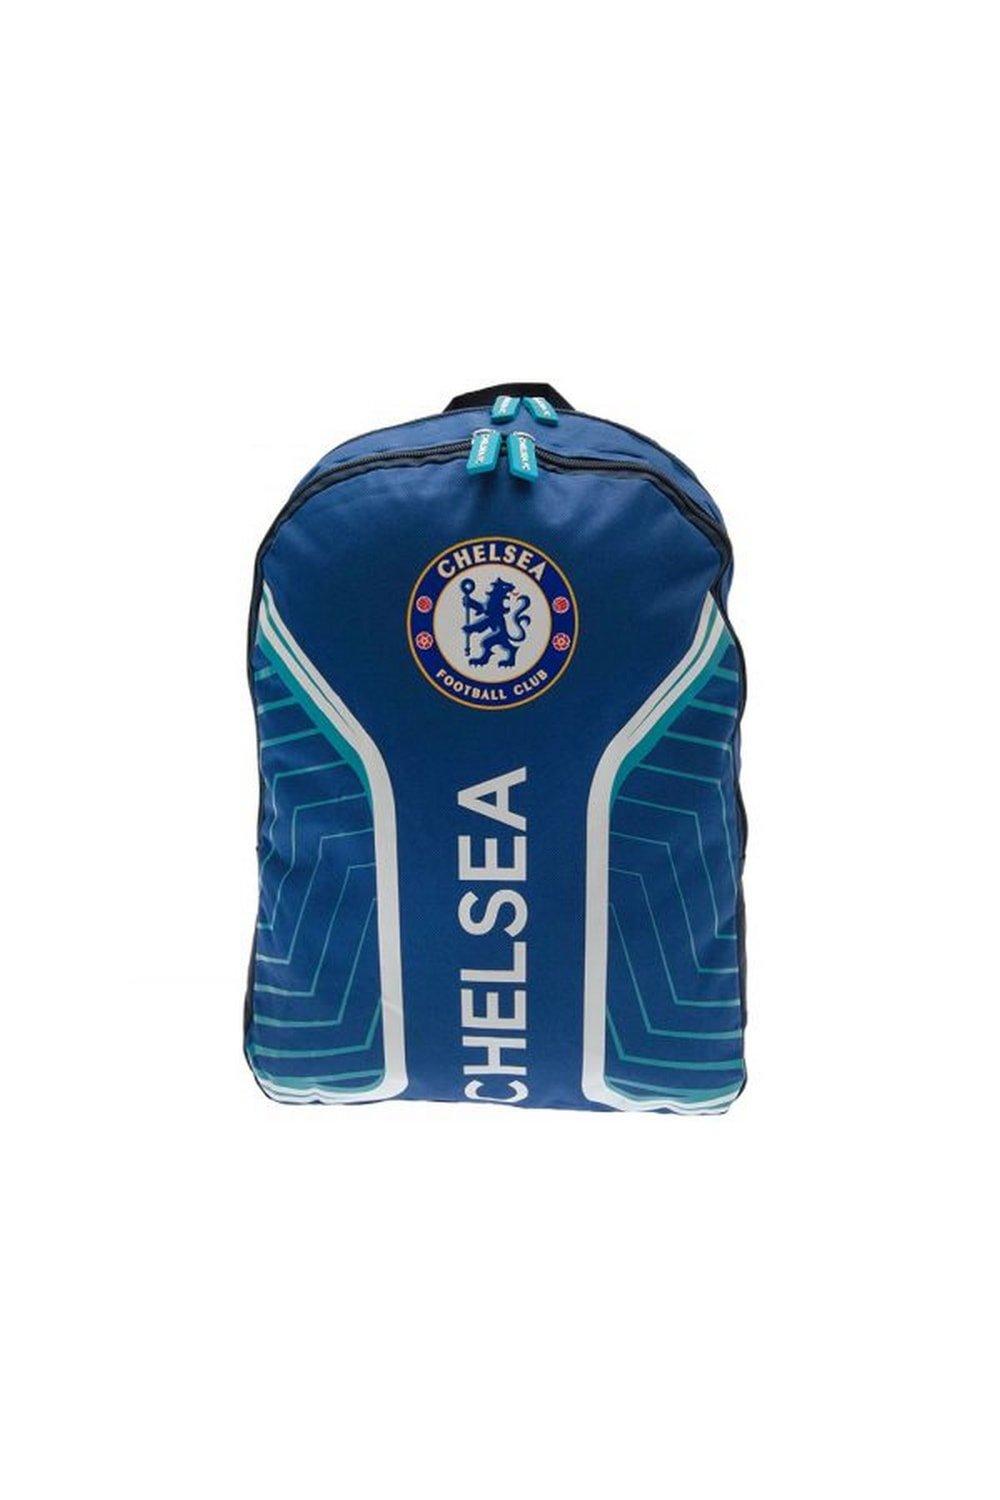 Флэш-рюкзак Chelsea FC, синий фото